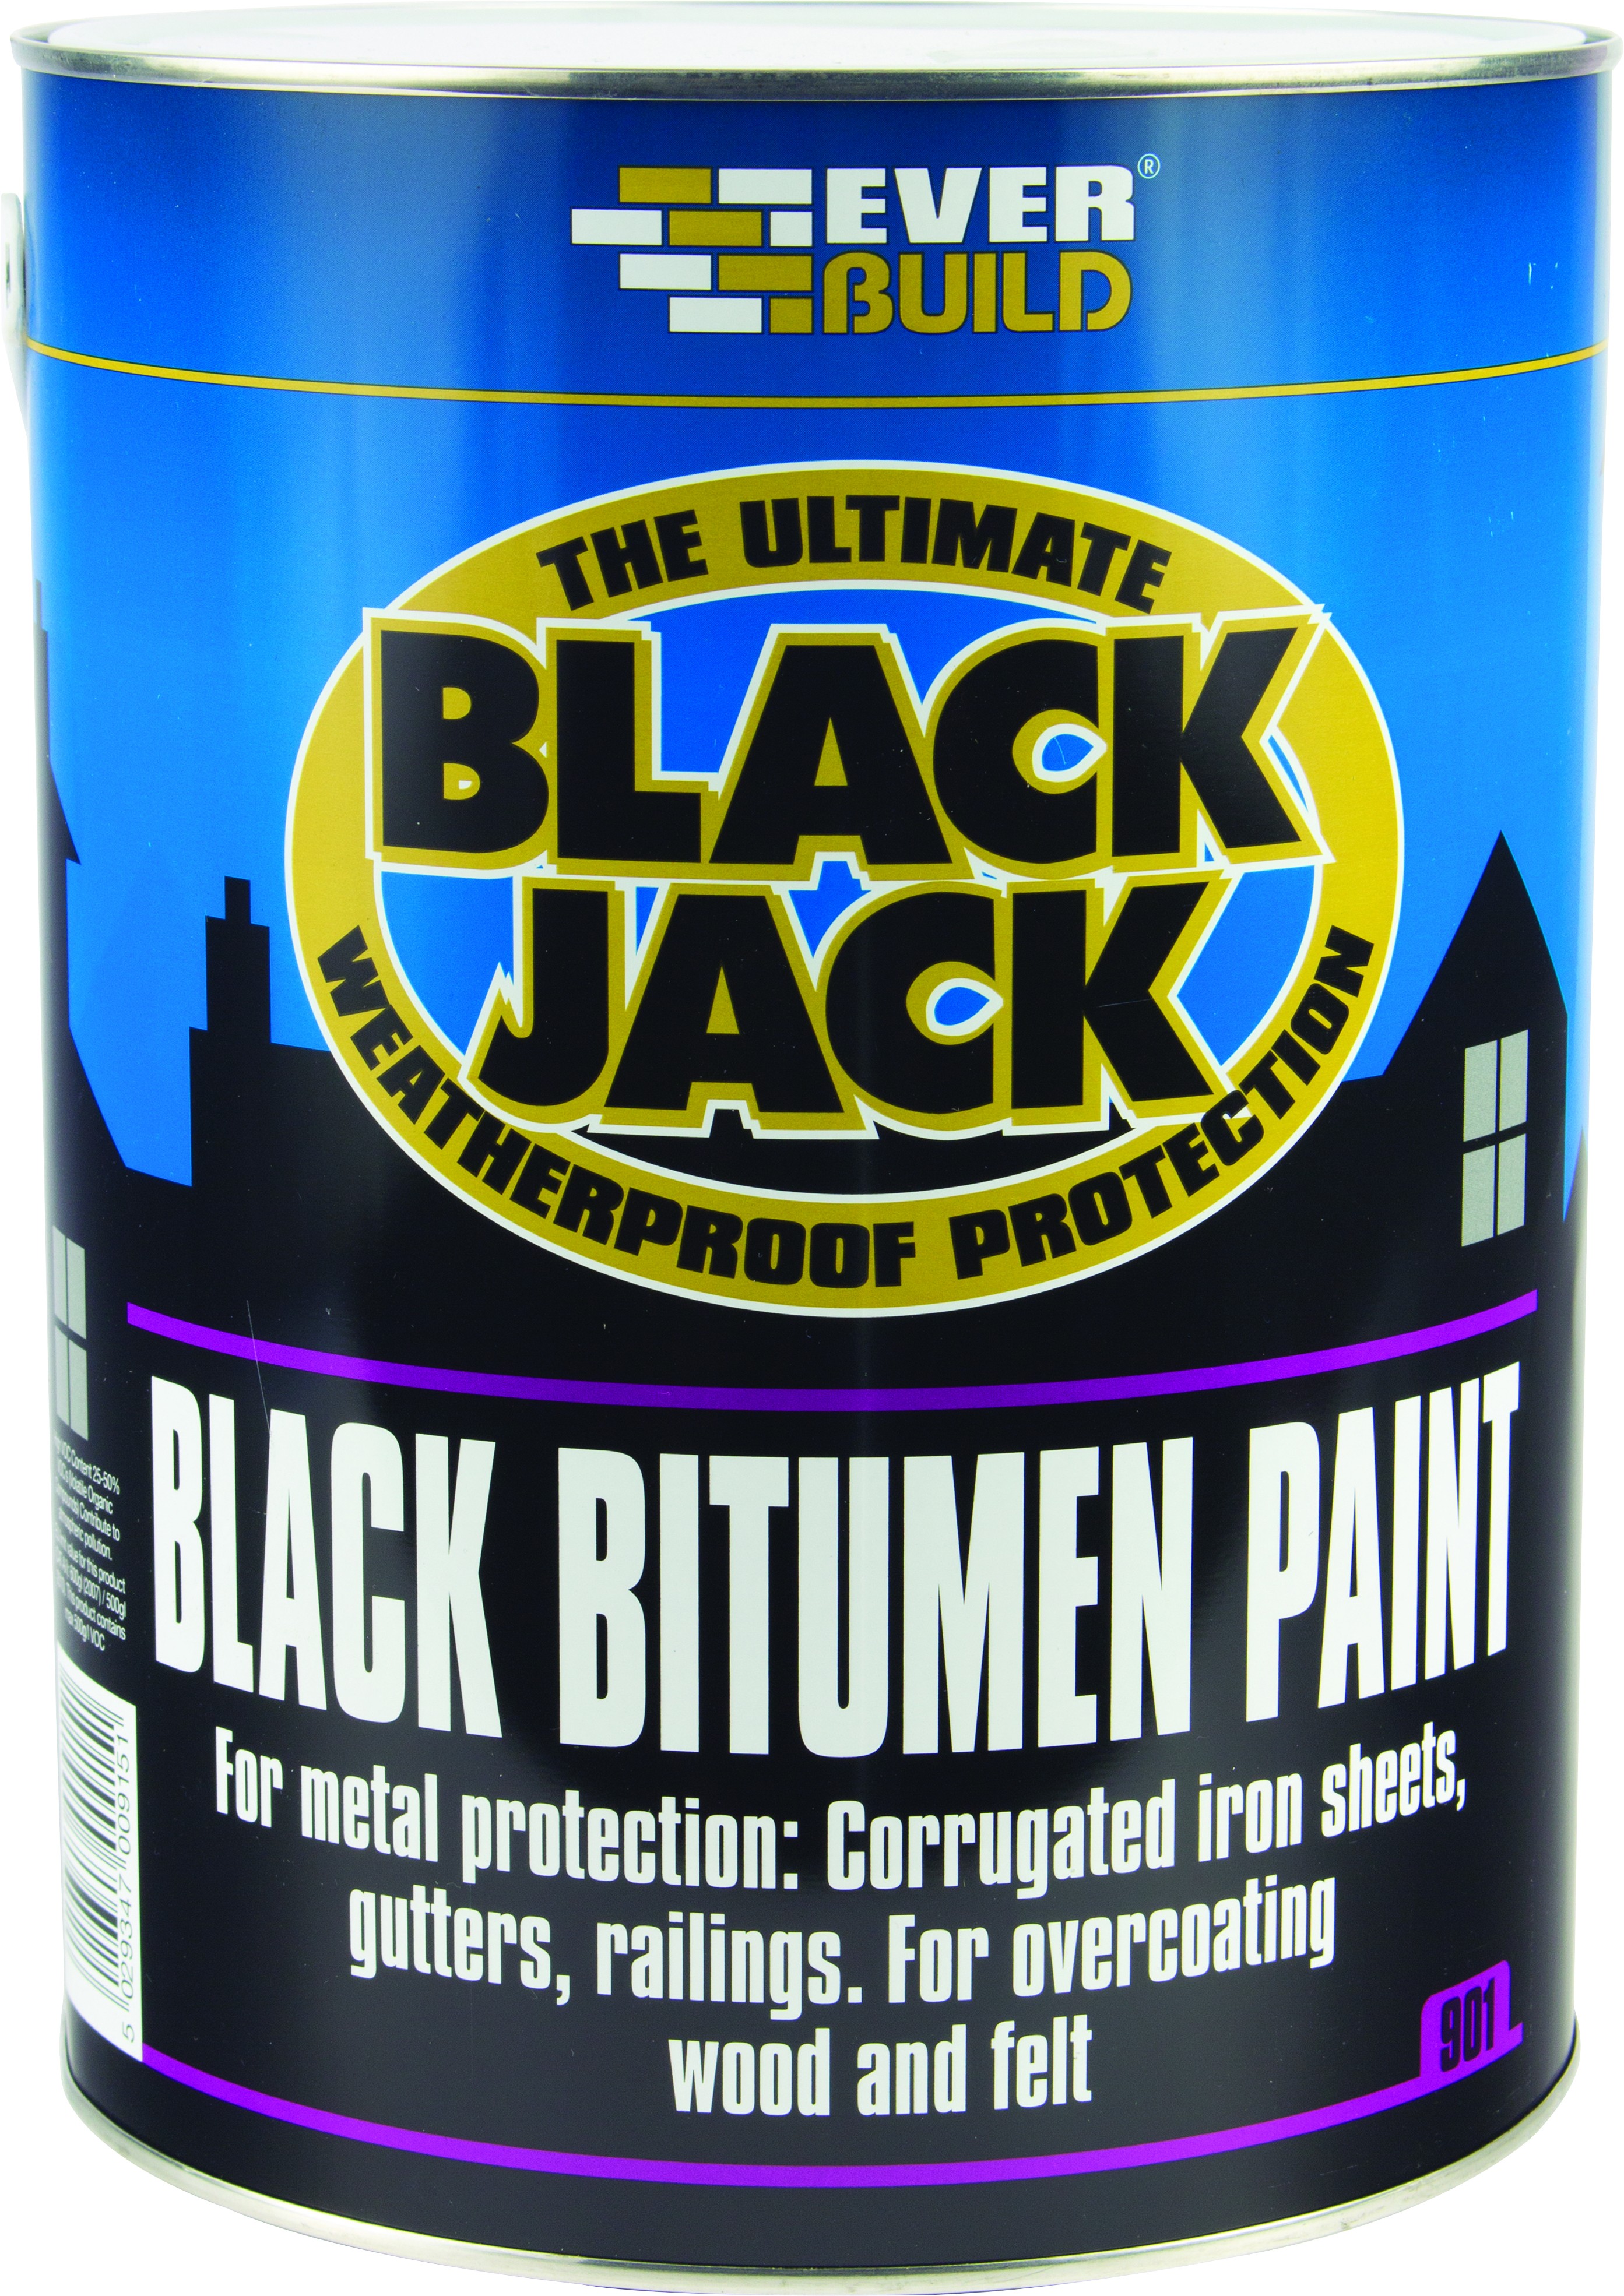 SikaEverbuild Black Jack 901 Bitumen Paint 2.5L Black [SIK90102]